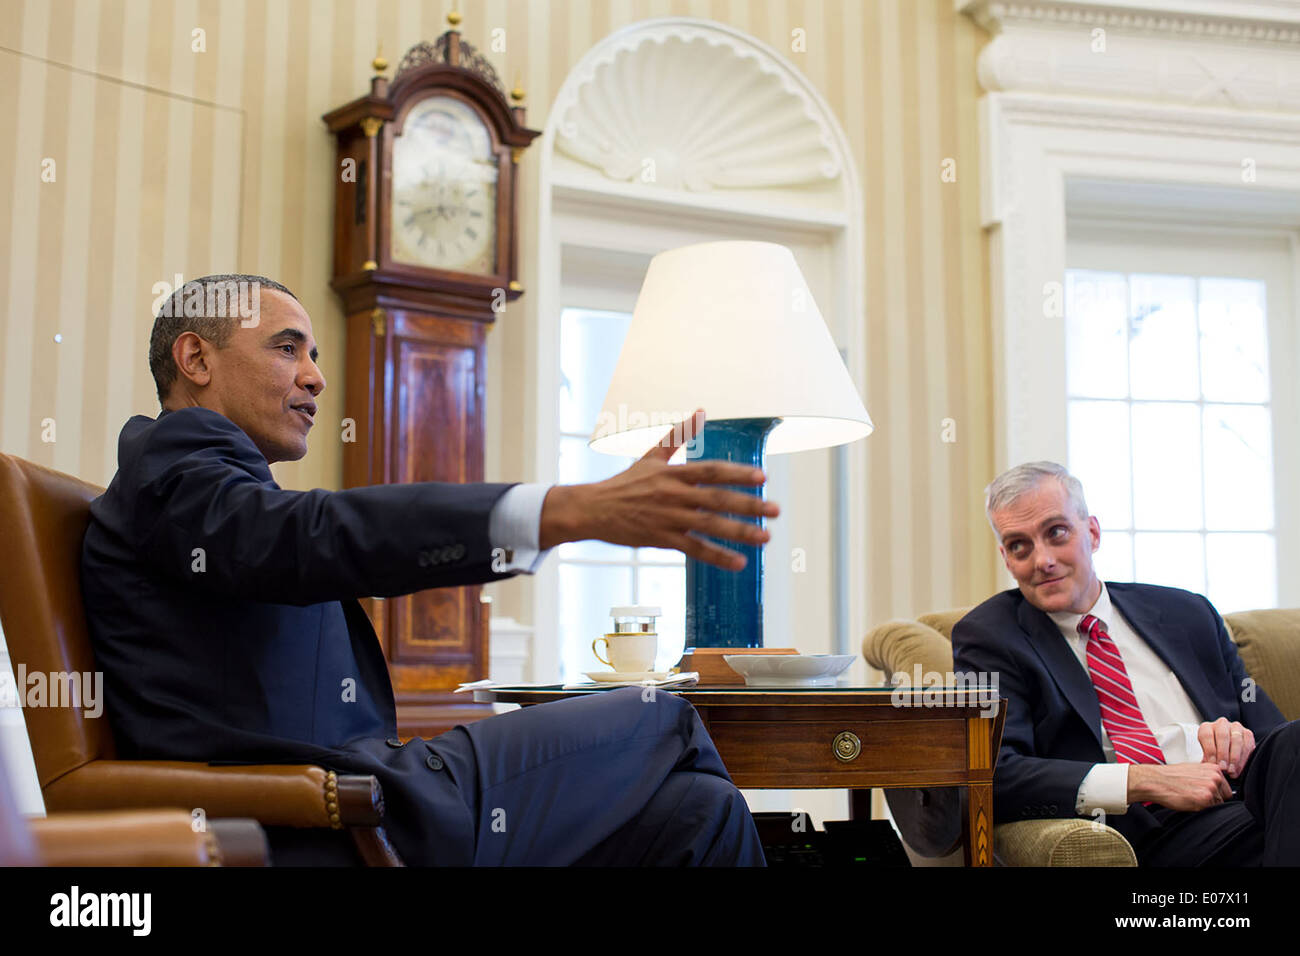 El presidente estadounidense, Barack Obama, gestos durante una reunión con el Jefe de Gabinete Denis McDonough en la Oficina Oval de la Casa Blanca el 6 de enero de 2014 en Washington, DC. Foto de stock